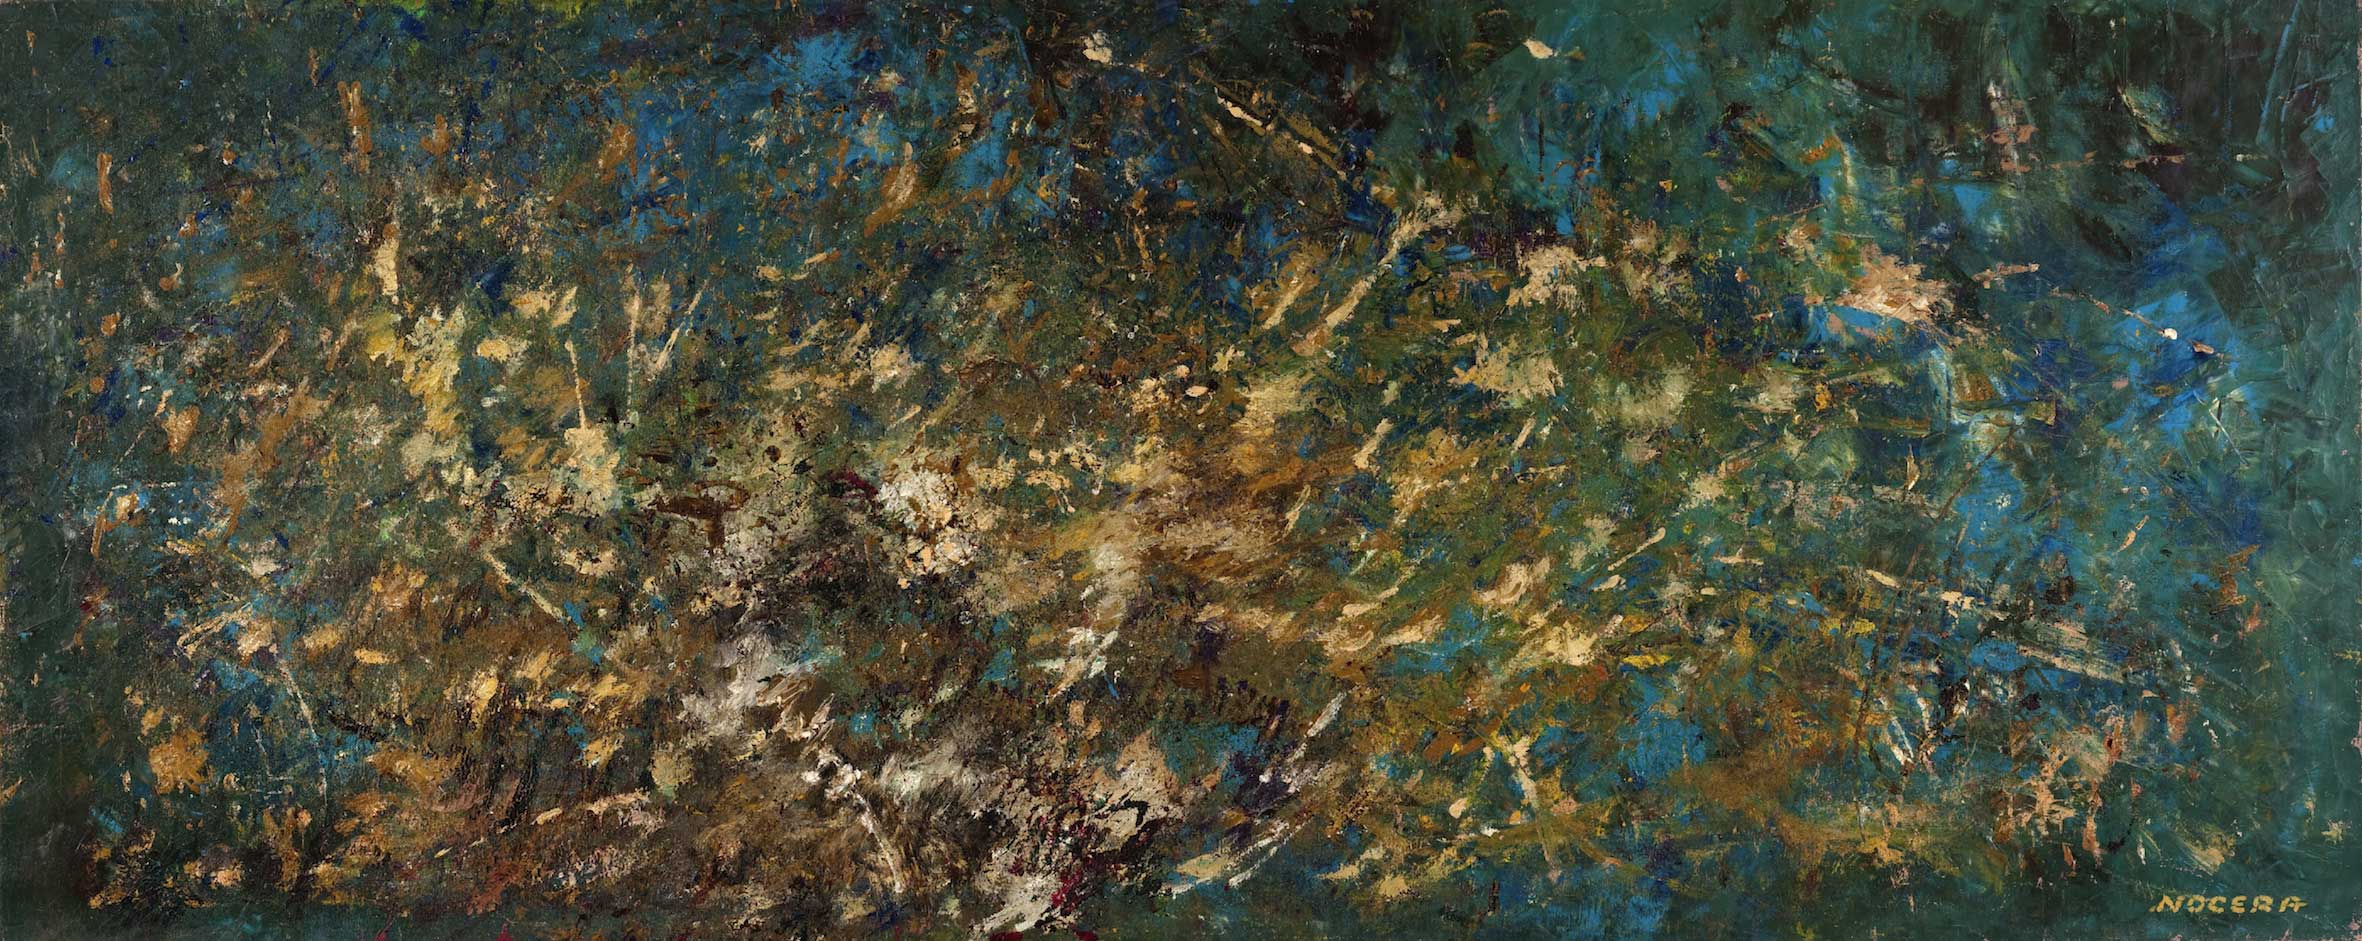 Salvatore Nocera, Senza Titolo, olio su tela, 235x95 cm (s.d. / 1975 ca.)